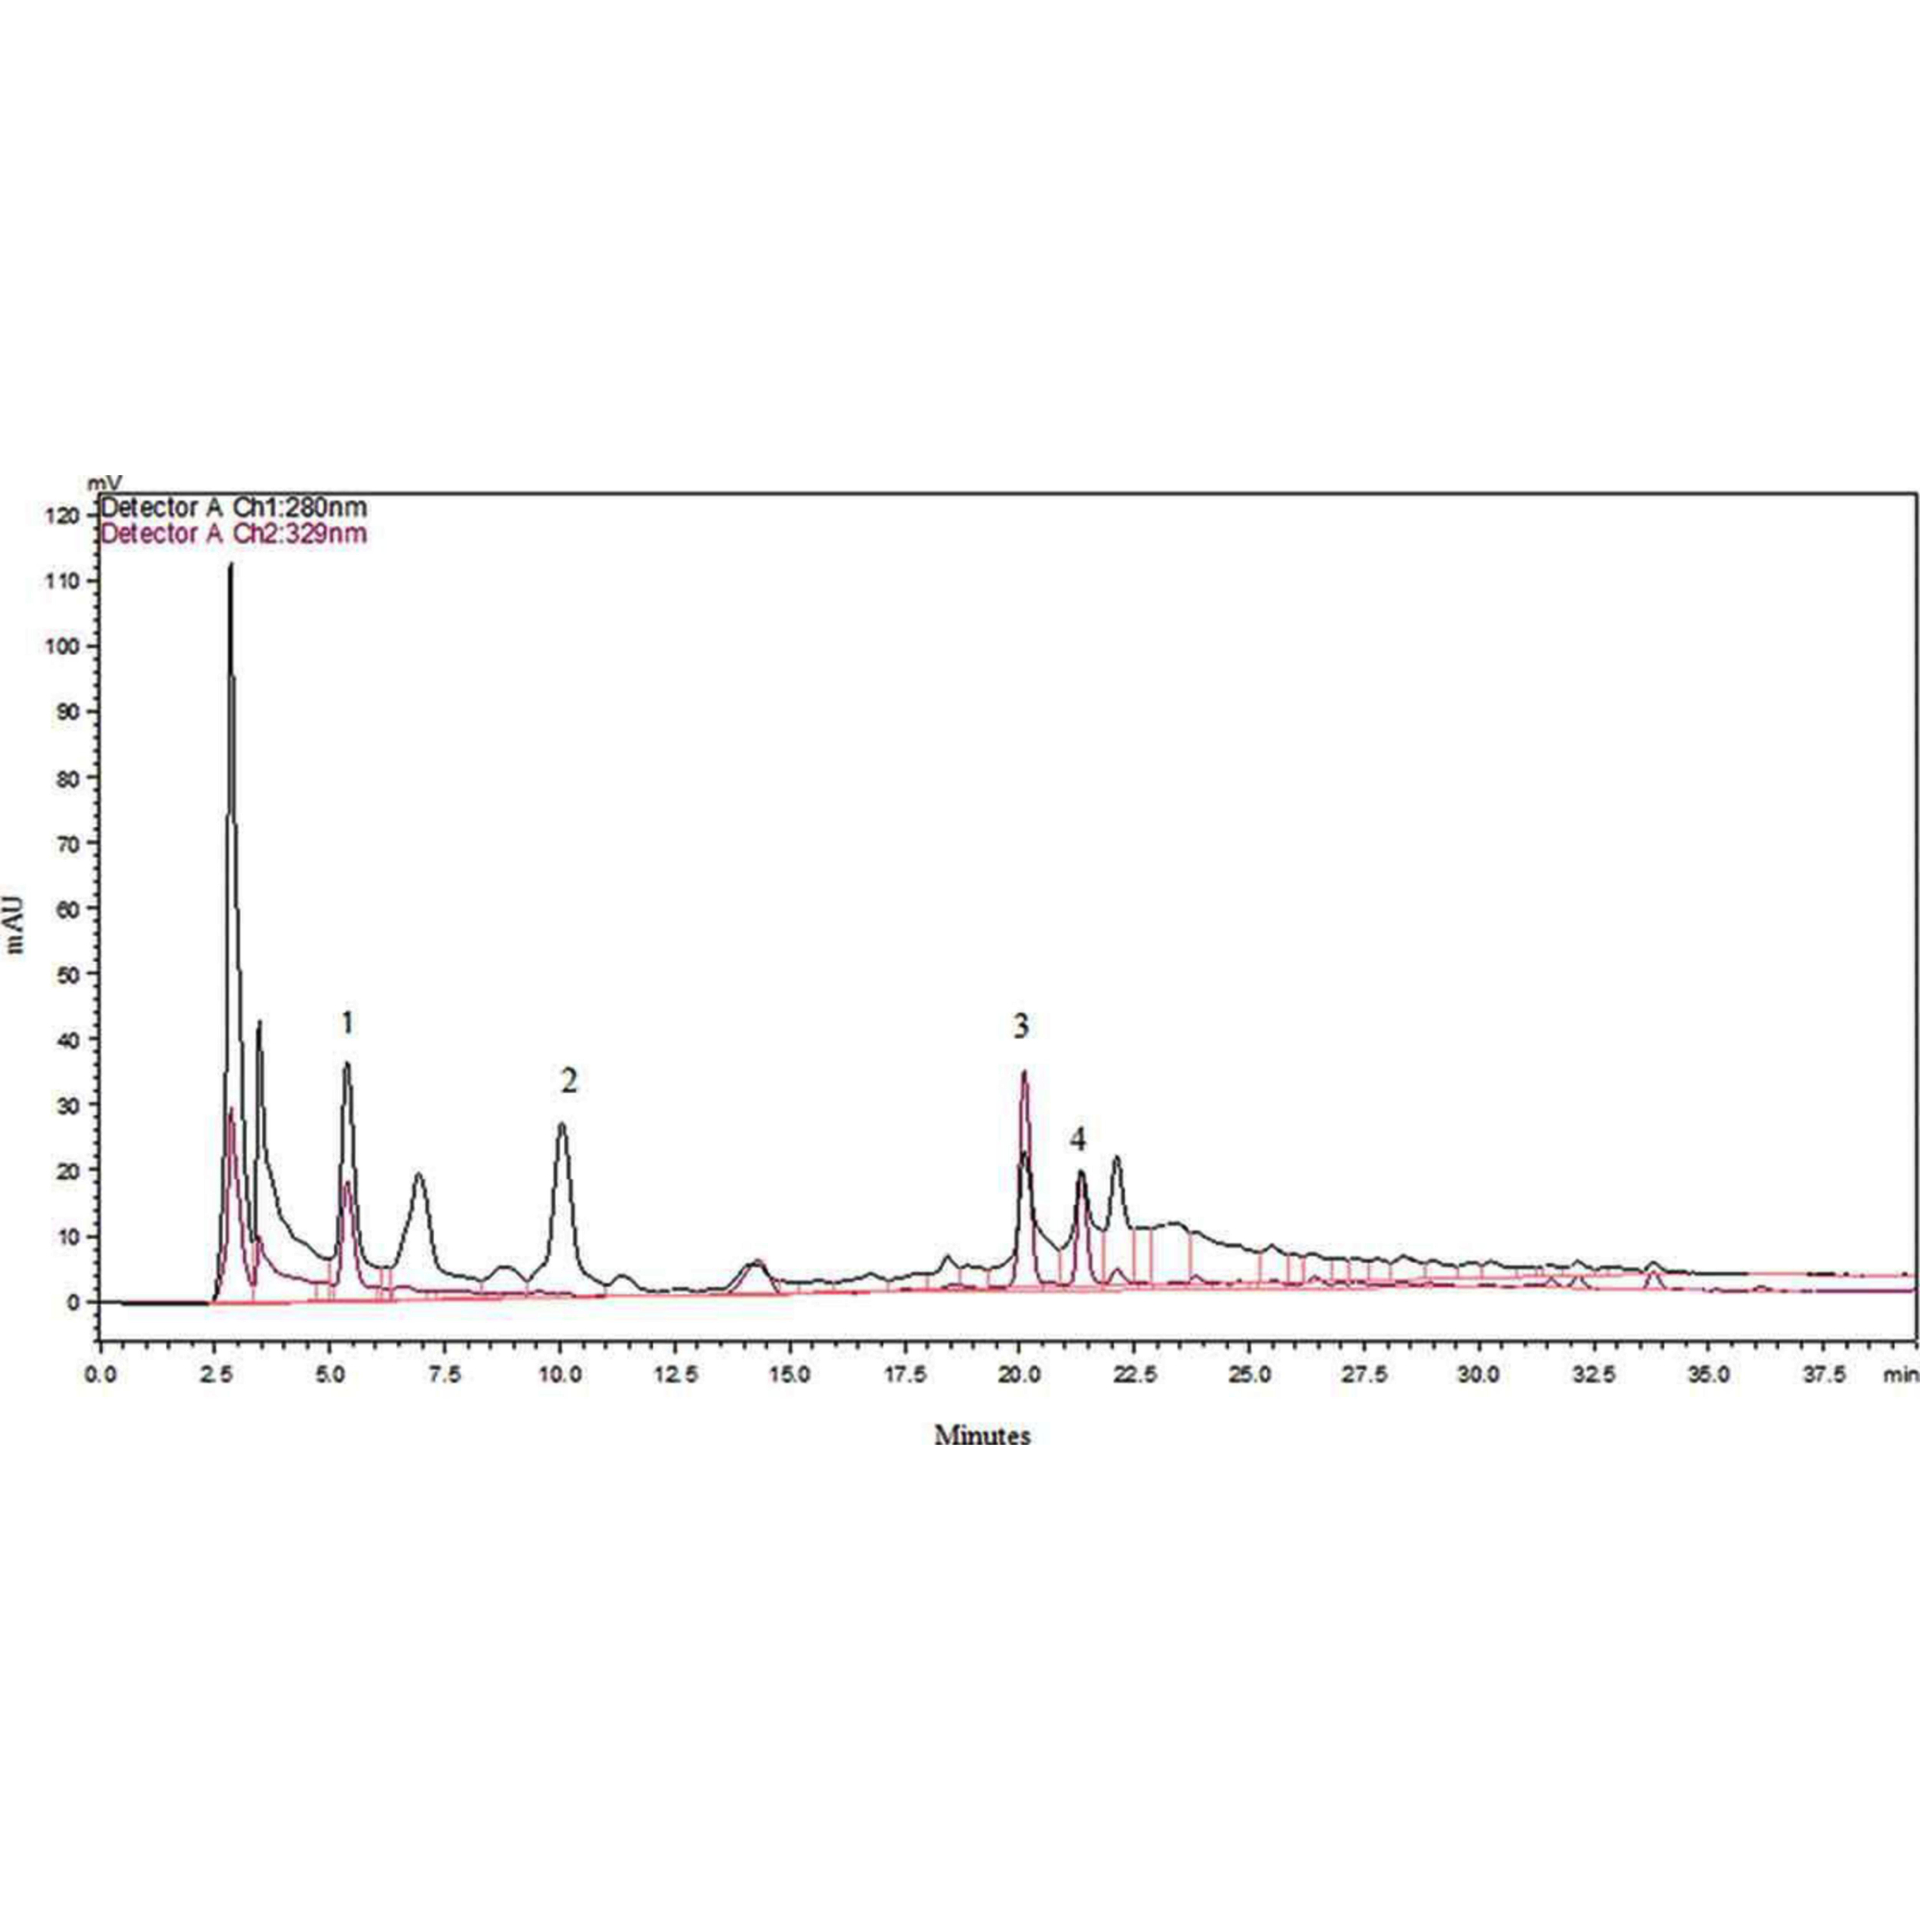 Cromatograma HPLC de ácidos fenólicos libres en semilla de ramón. Extracción metanol-ácido acético, 280 y 329 nm. 1 –ácido gálico, 2 –ácido p-hidroxibenzoico, 3 –ácido vanílico y 4 – ácido cafeico. Fuente: (Ozer, 2017).